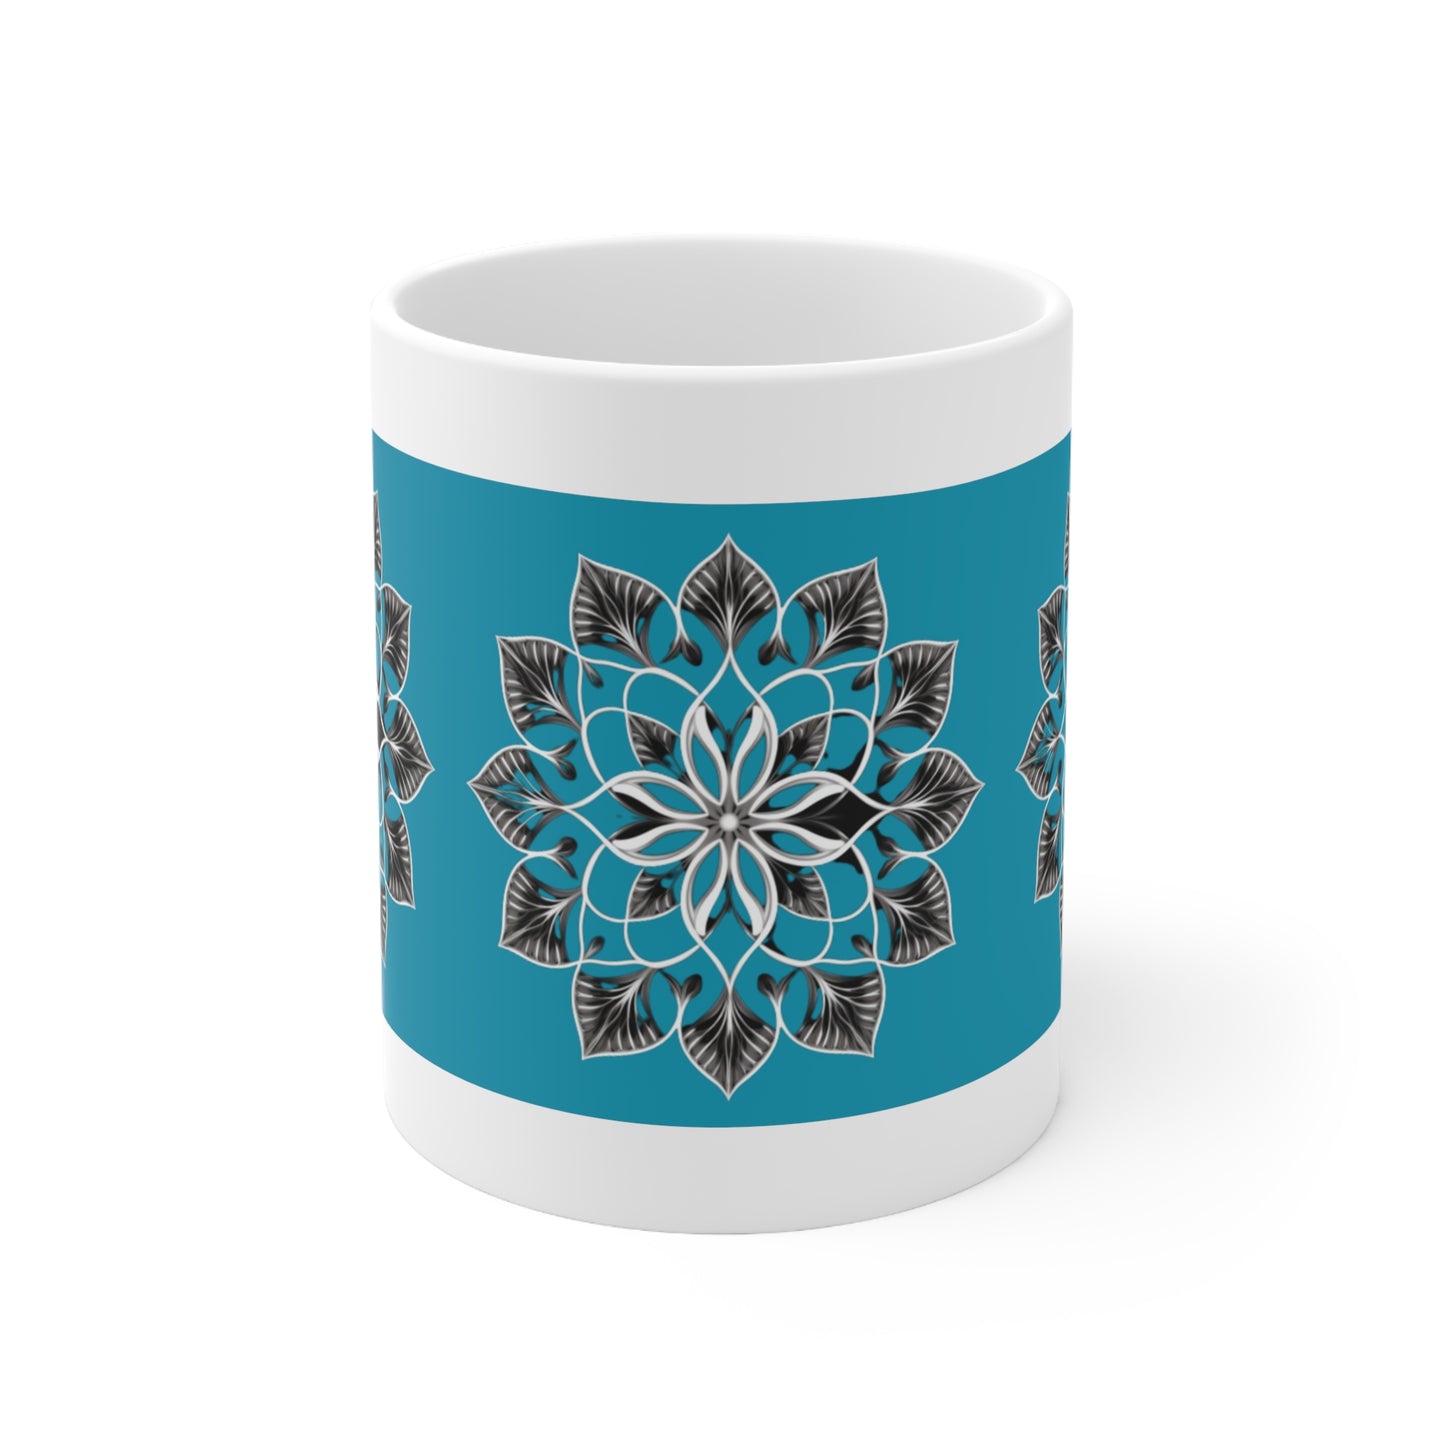 Turquoise, Black and White Flower - Ceramic Mug 11oz